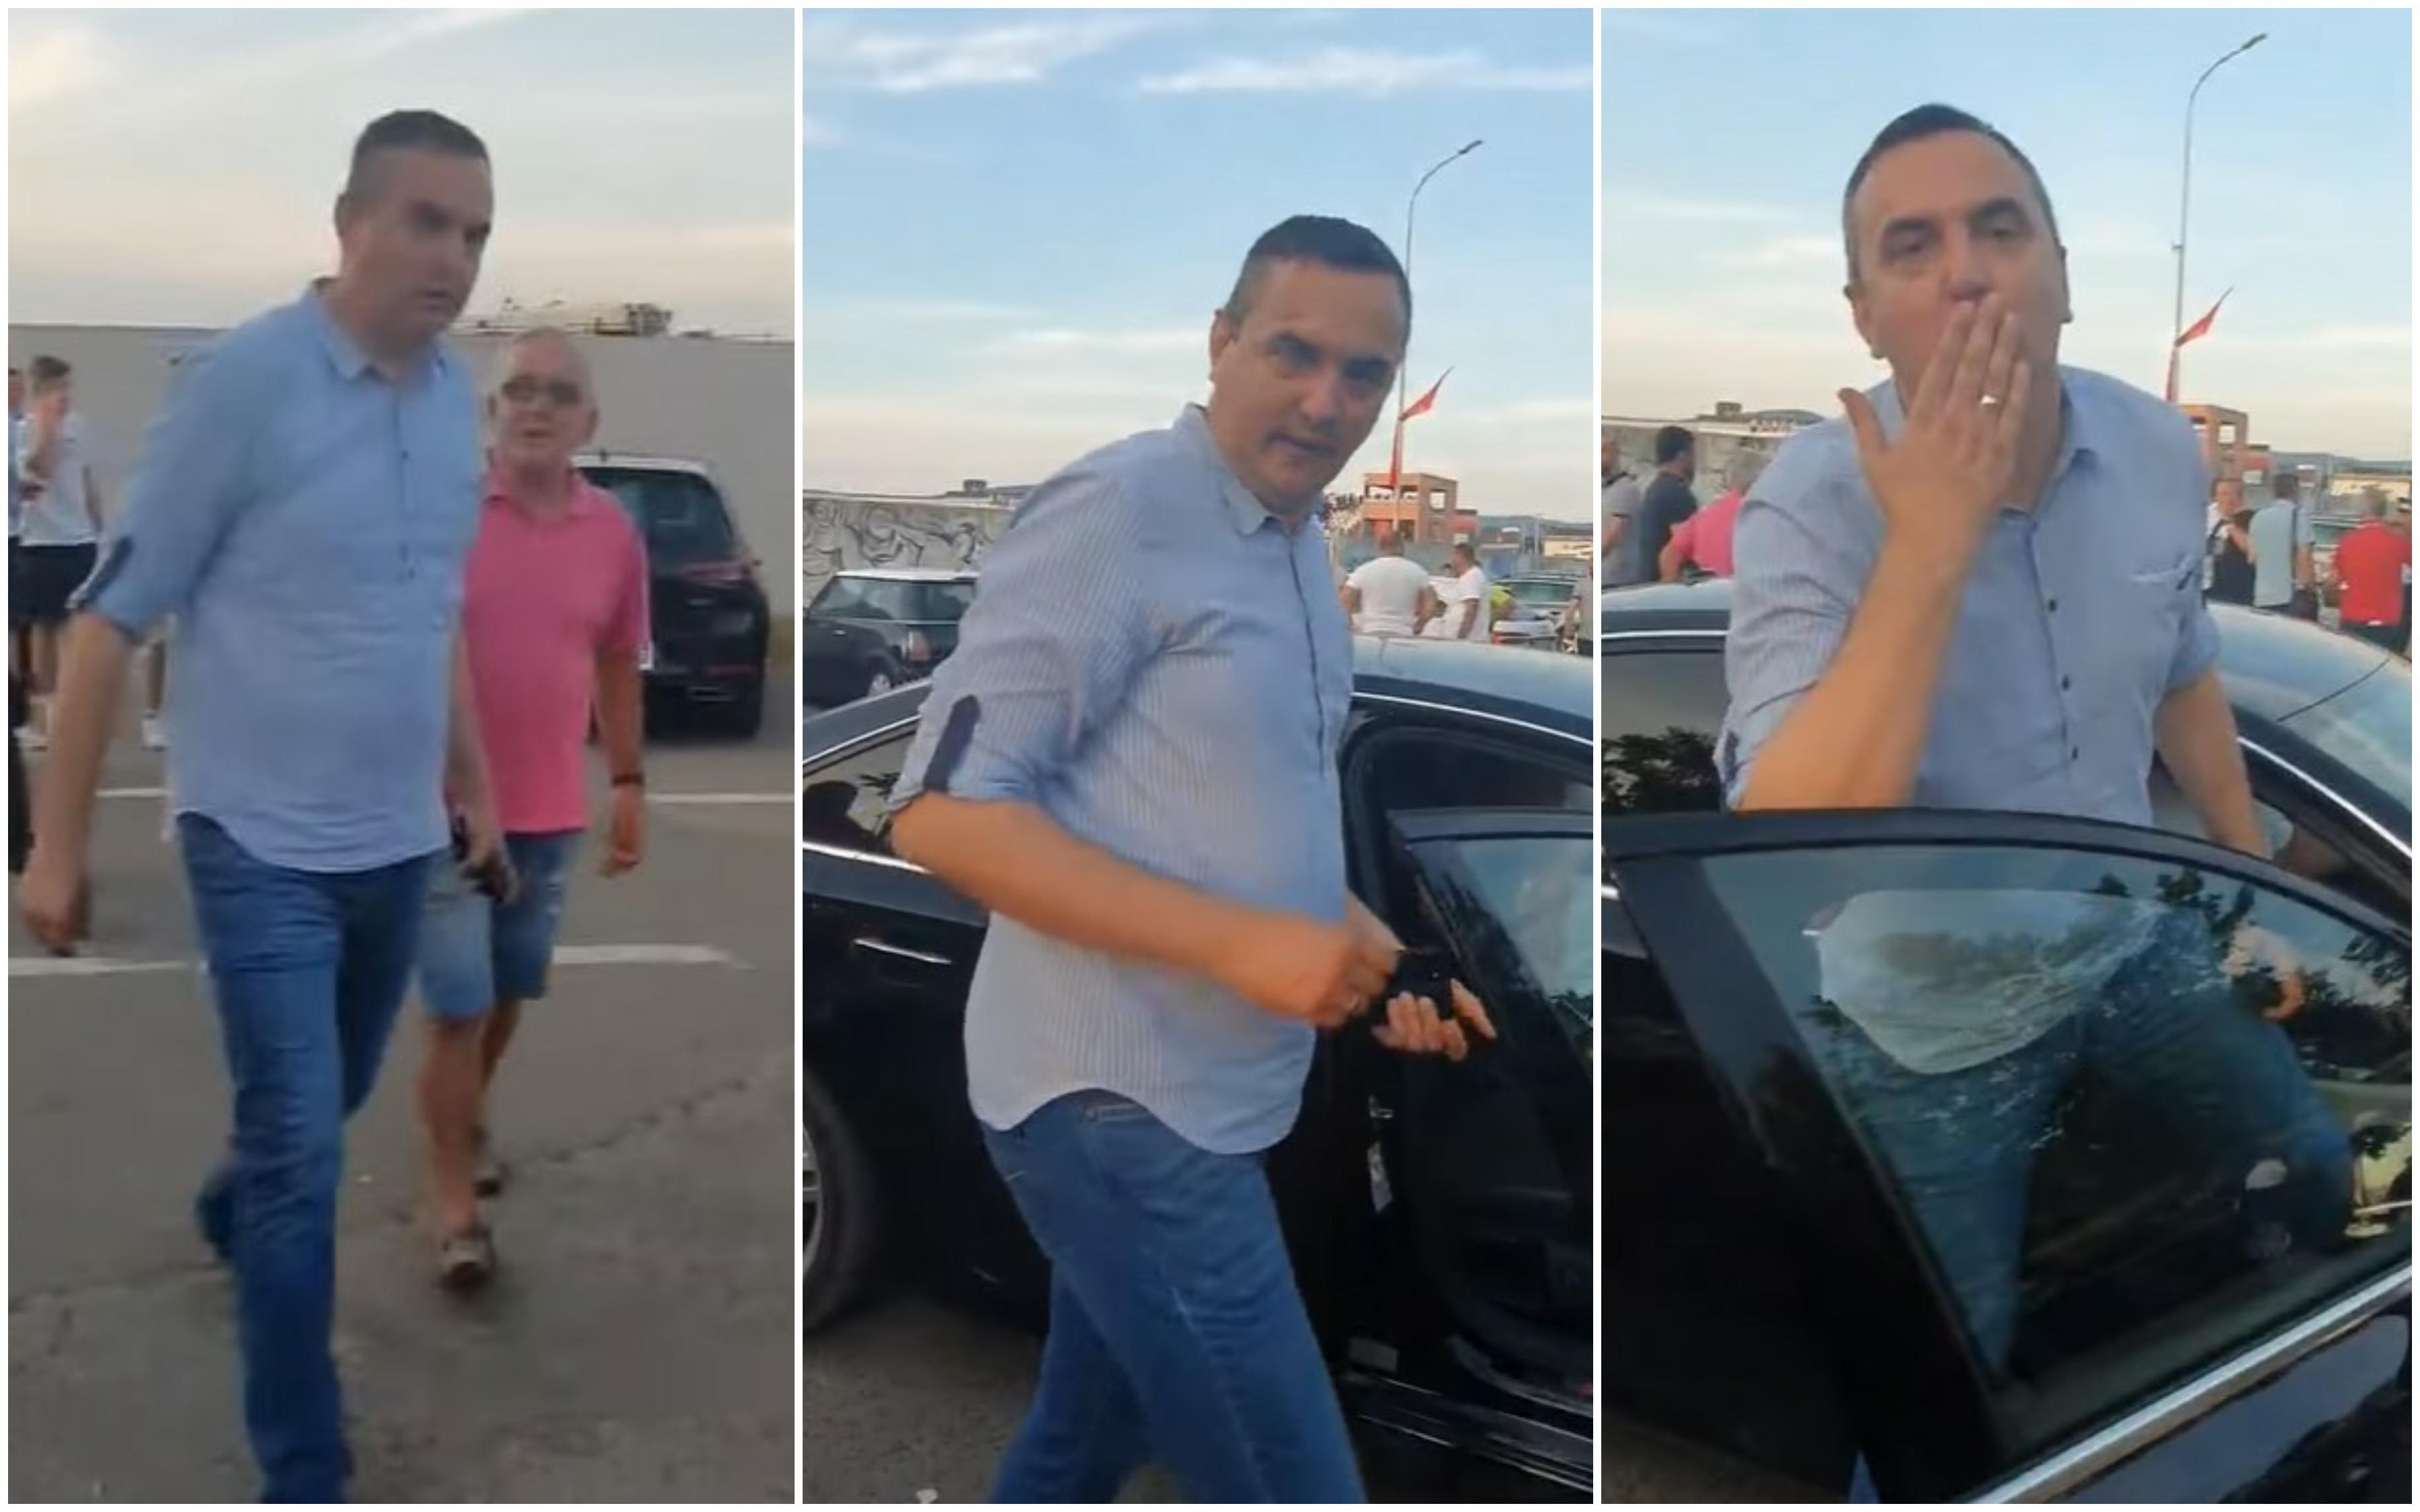 Gradonačelnik Prijedora došao službenim vozilom na utakmicu: "Idite na njivu odakle ste i došli"